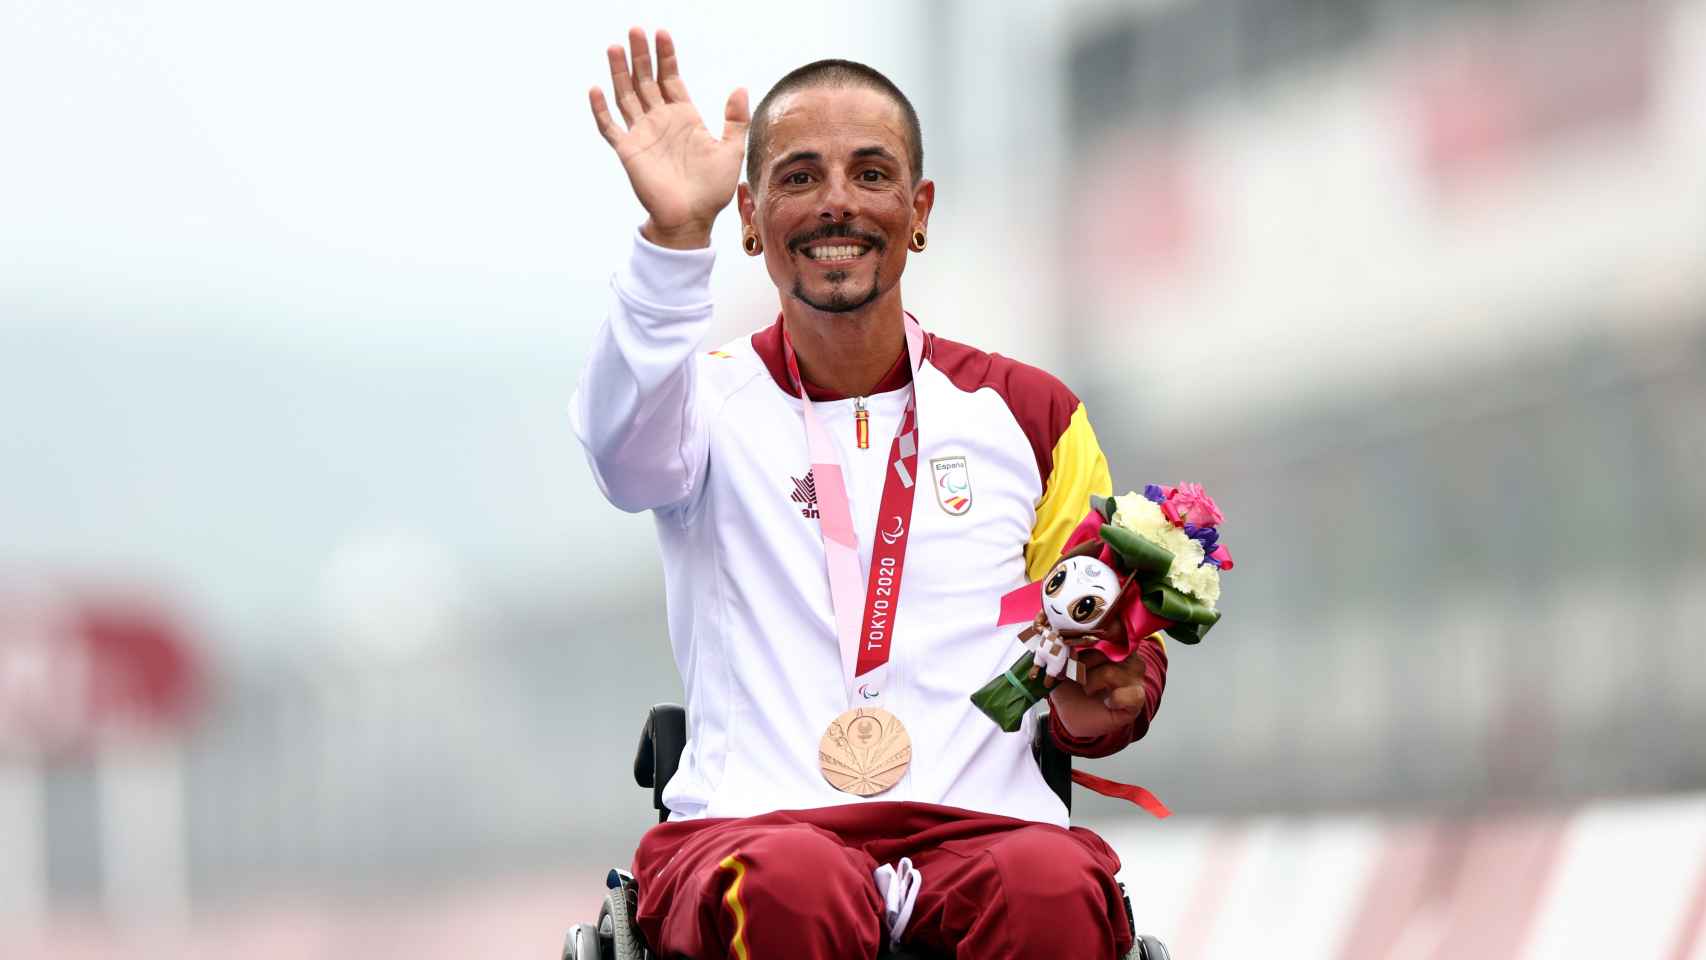 Sergio Garrote celebra su medalla en los Juegos Paralímpicos